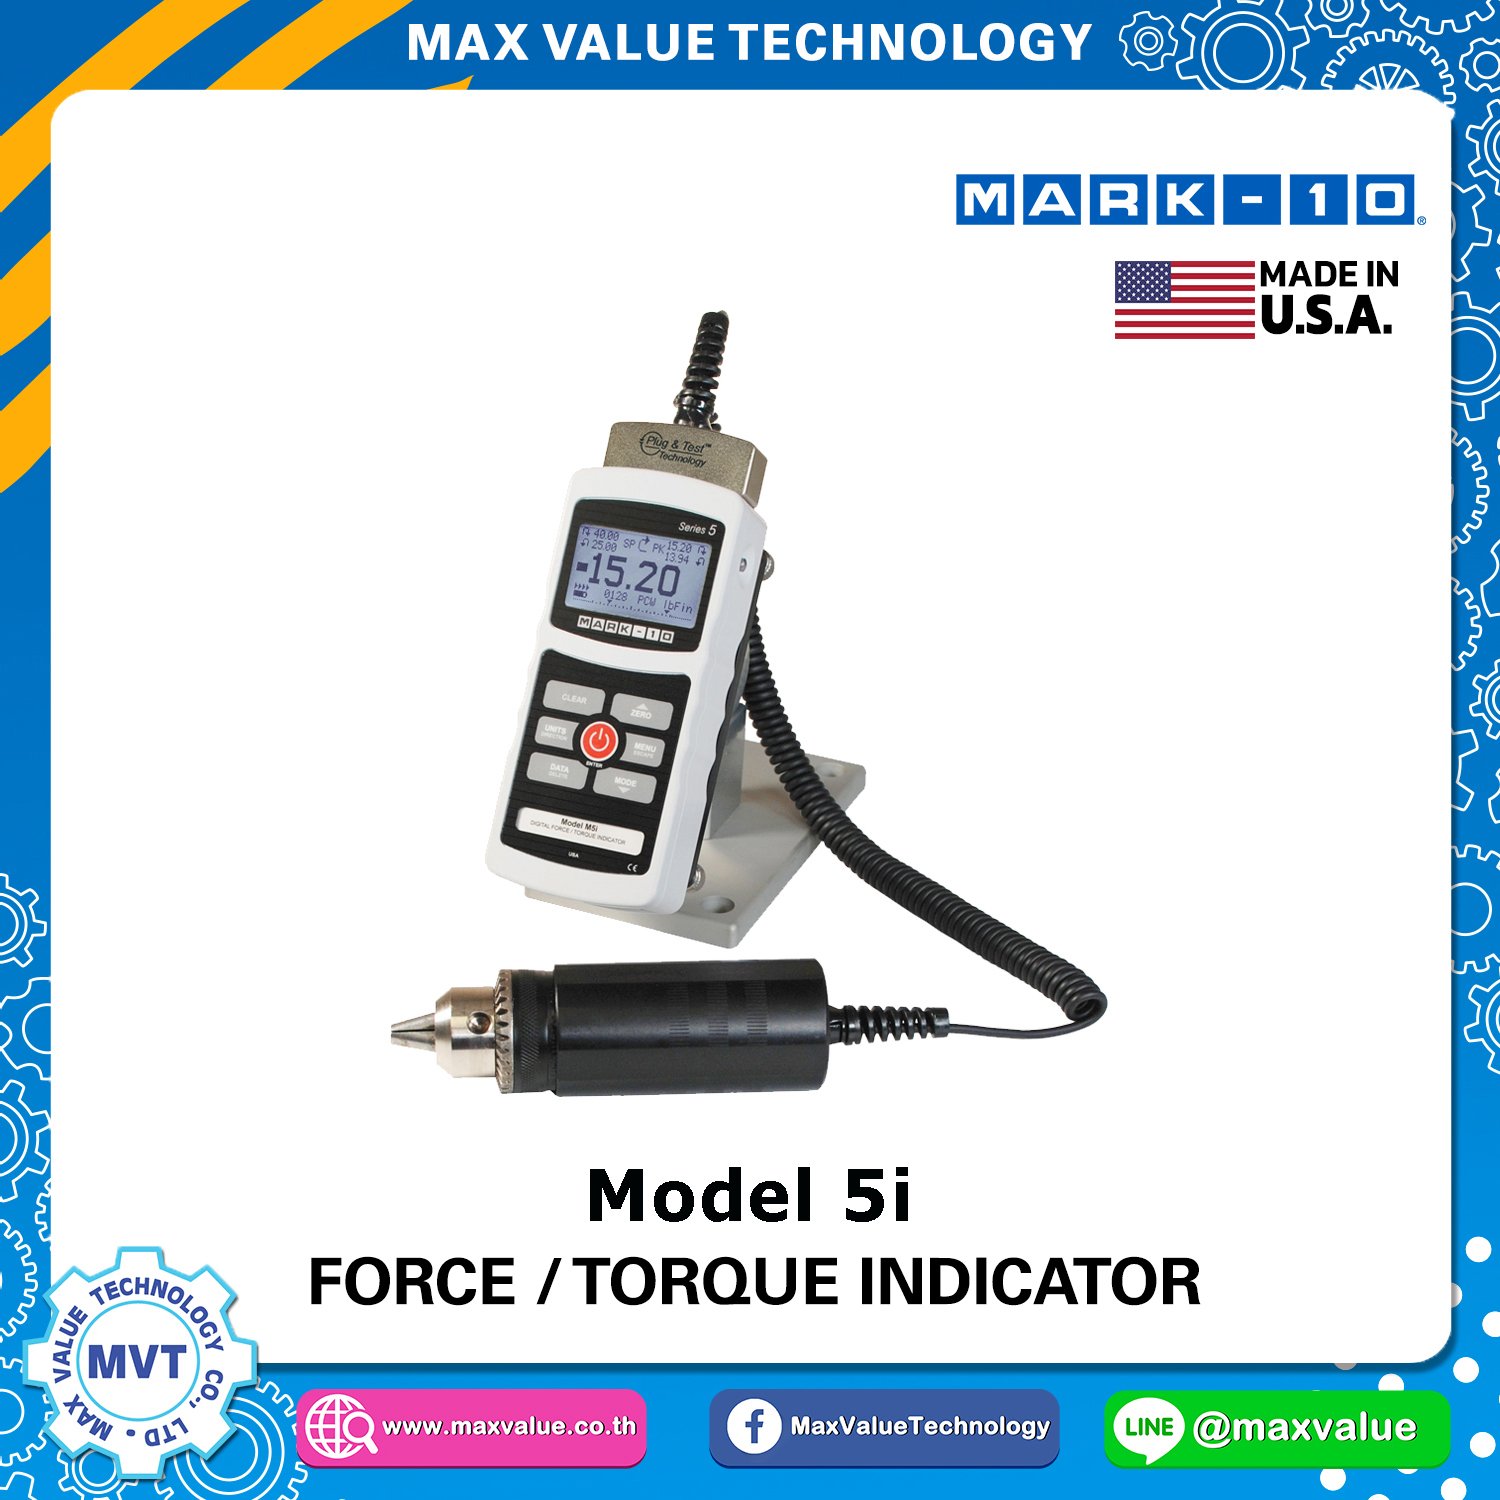 Model 5i - Advanced Force / Torque Indicator